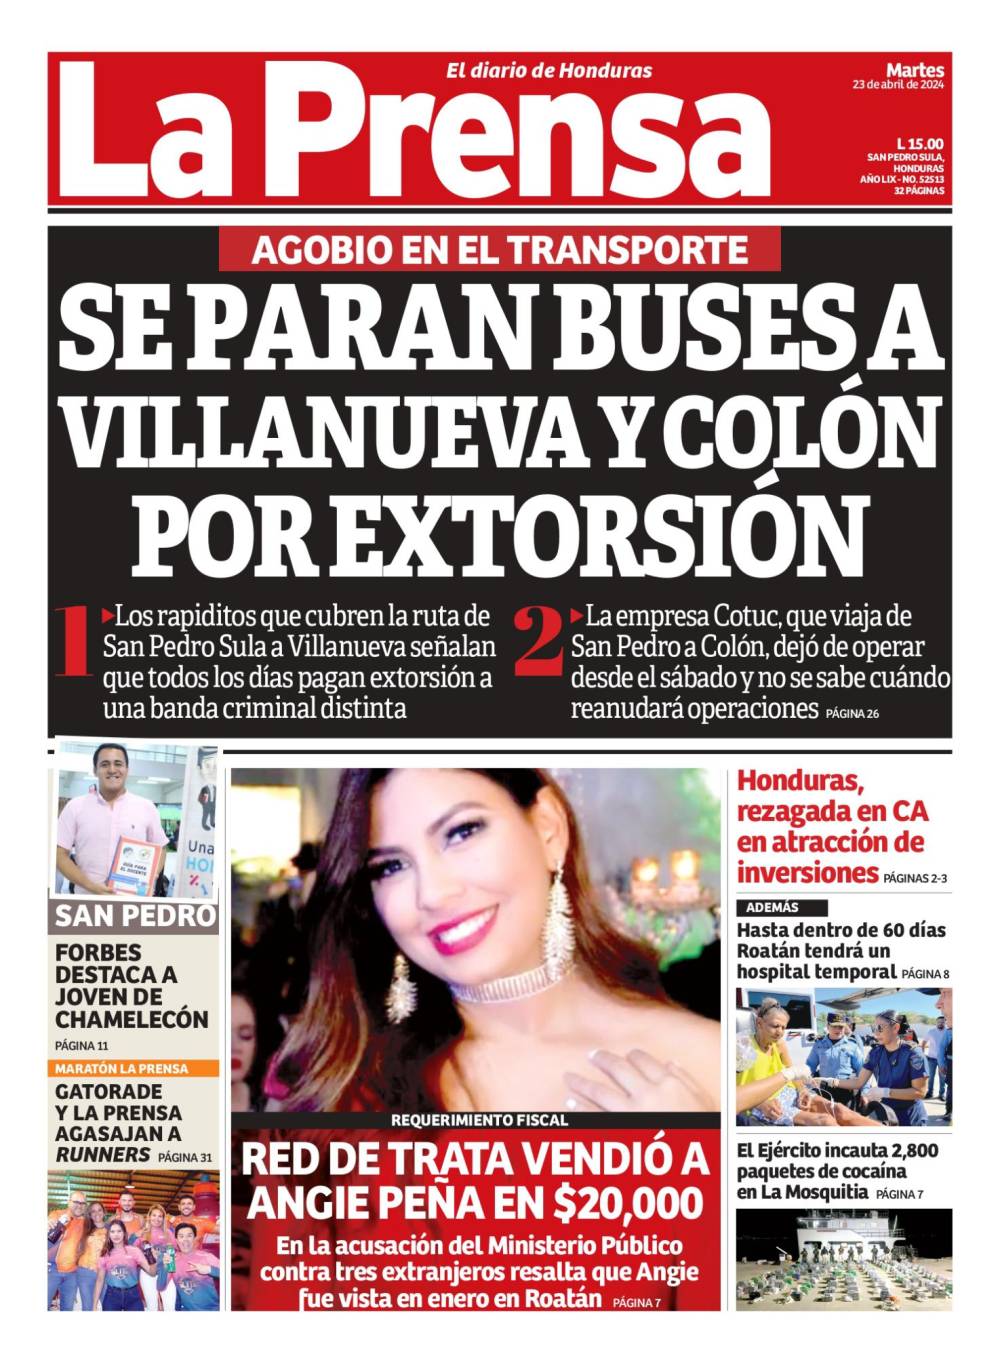 Se paran buses a Villanueva y Colón por extorsión